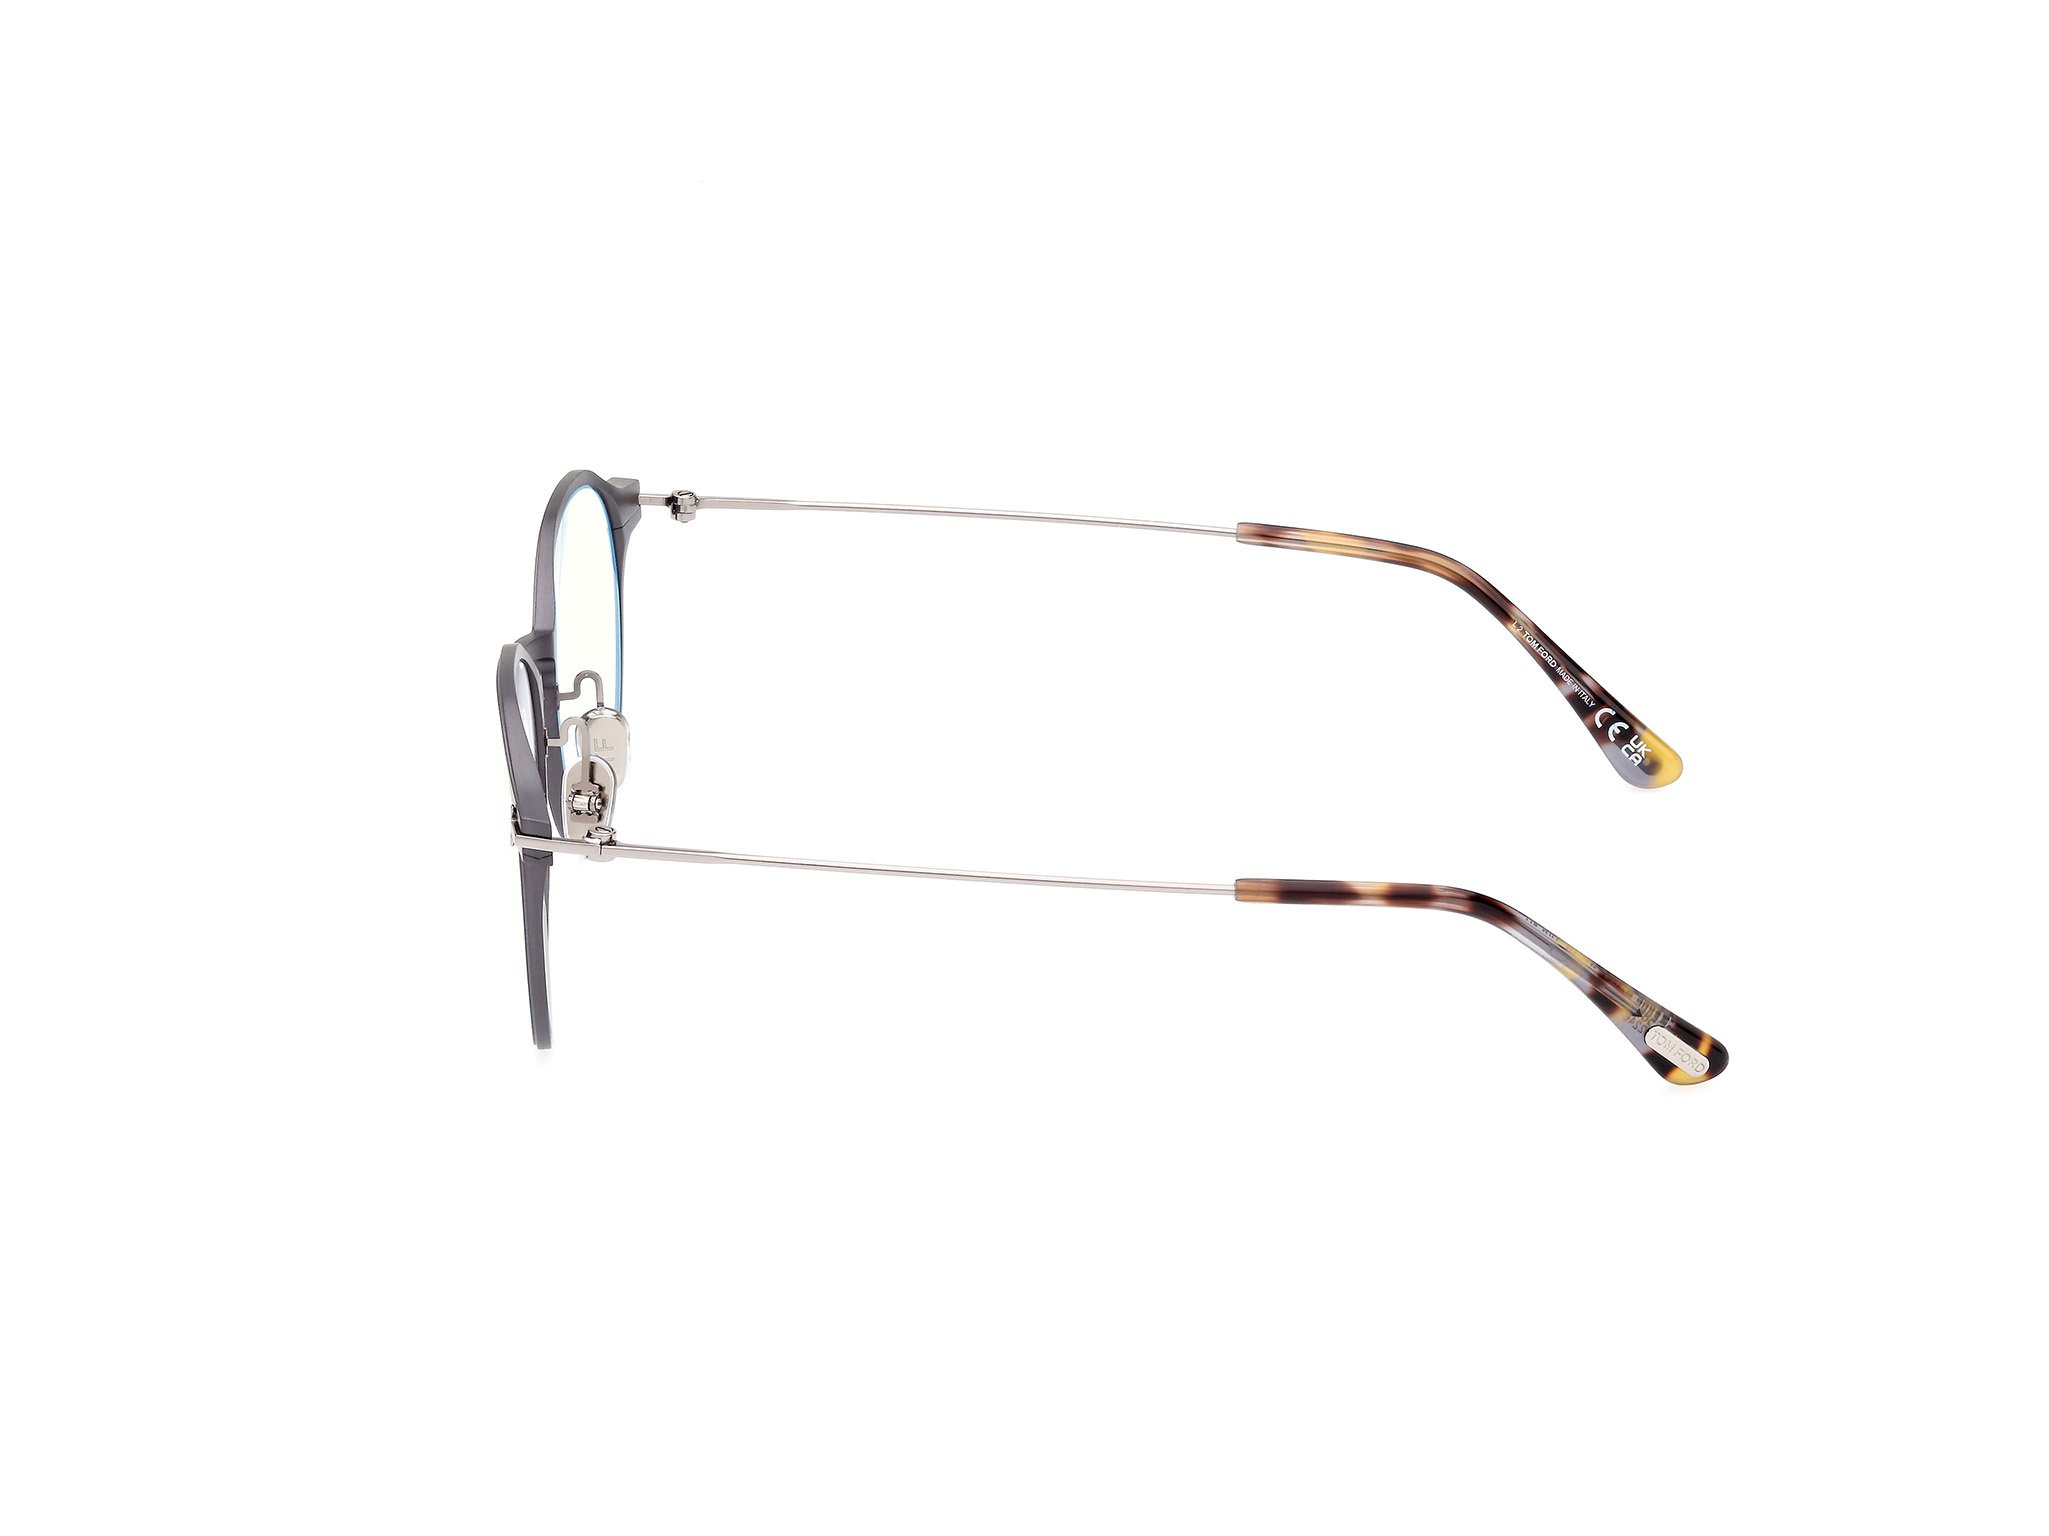 Das Bild zeigt die Korrektionsbrille FT5866-B 013 von der Marke Tom Ford in schwarz.